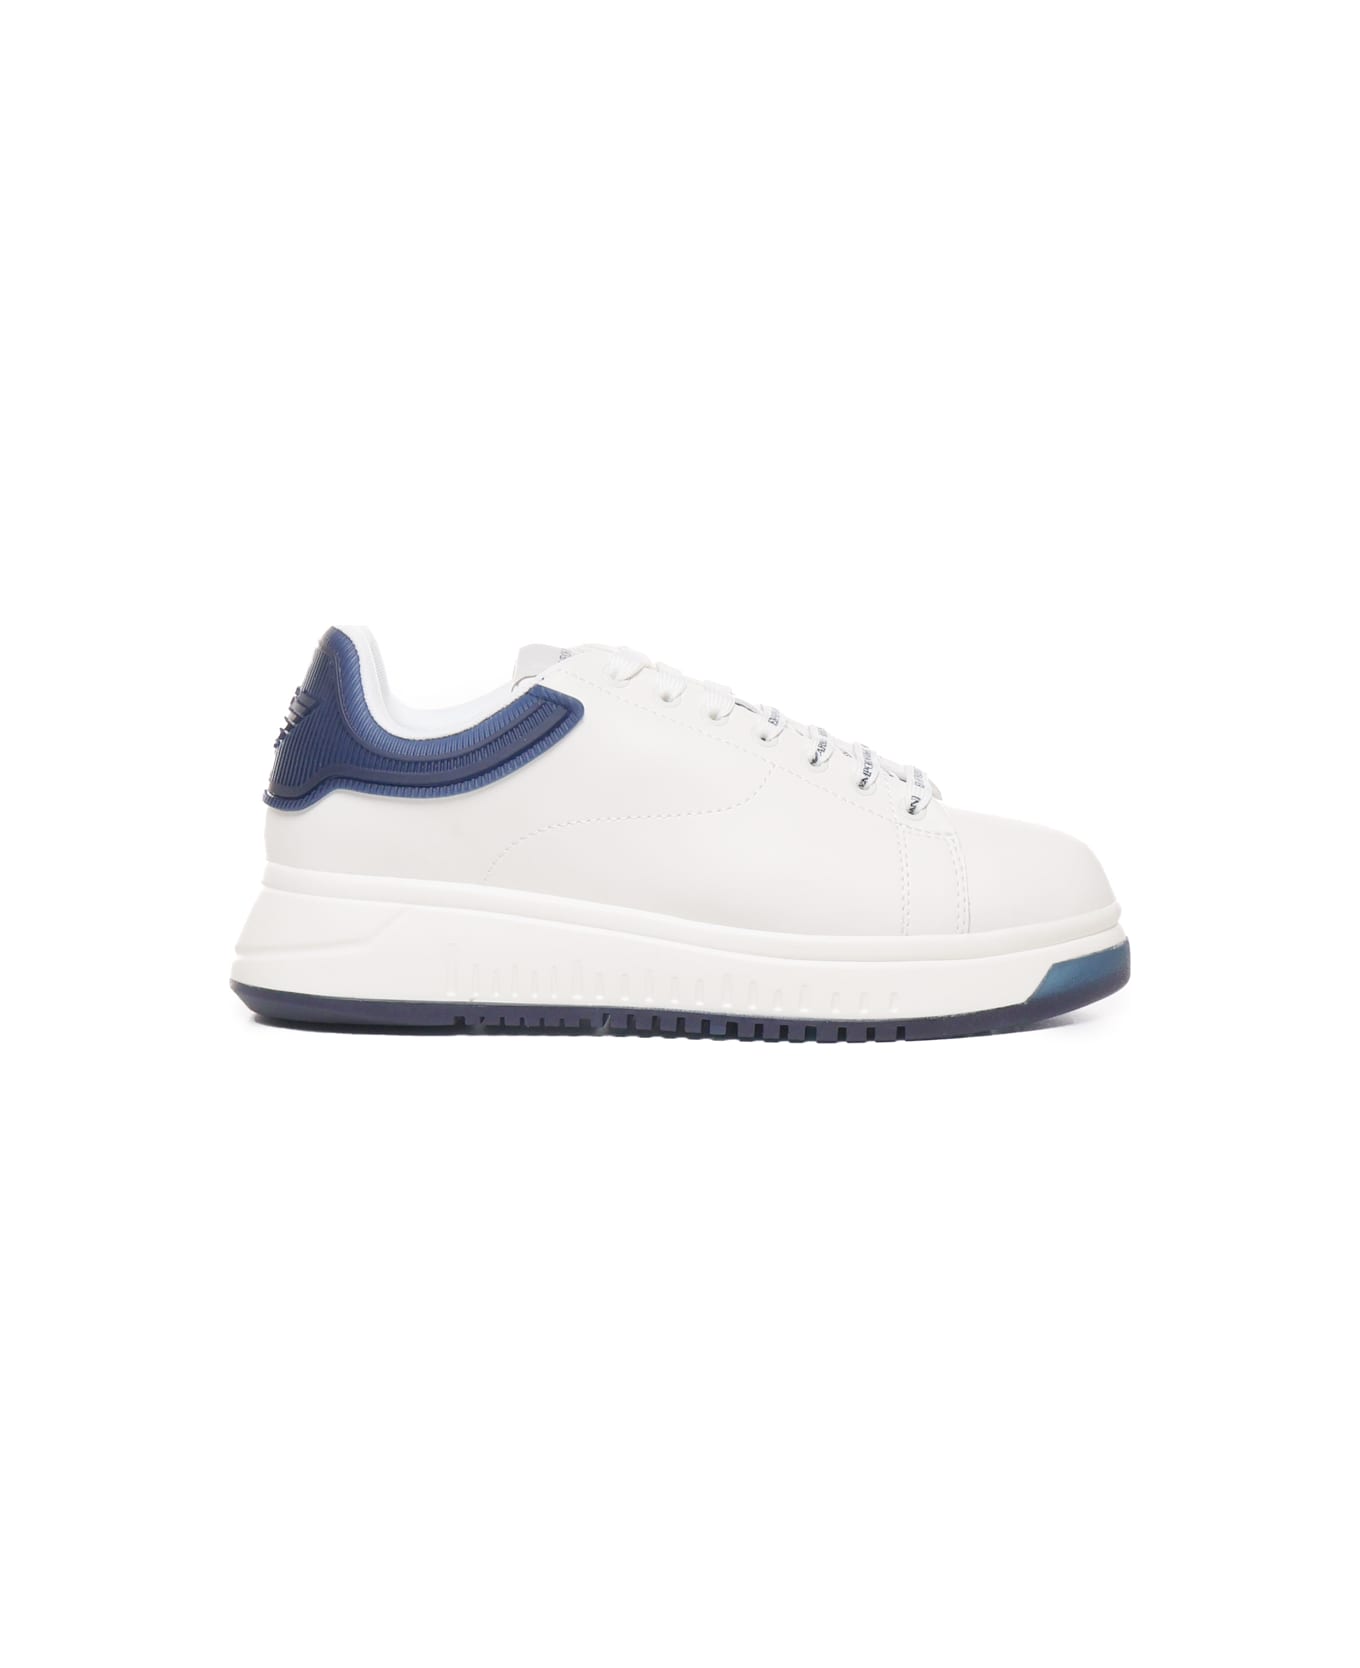 Giorgio Armani Sneakers With Contrasting Rivet Giorgio Armani - White, blue スニーカー